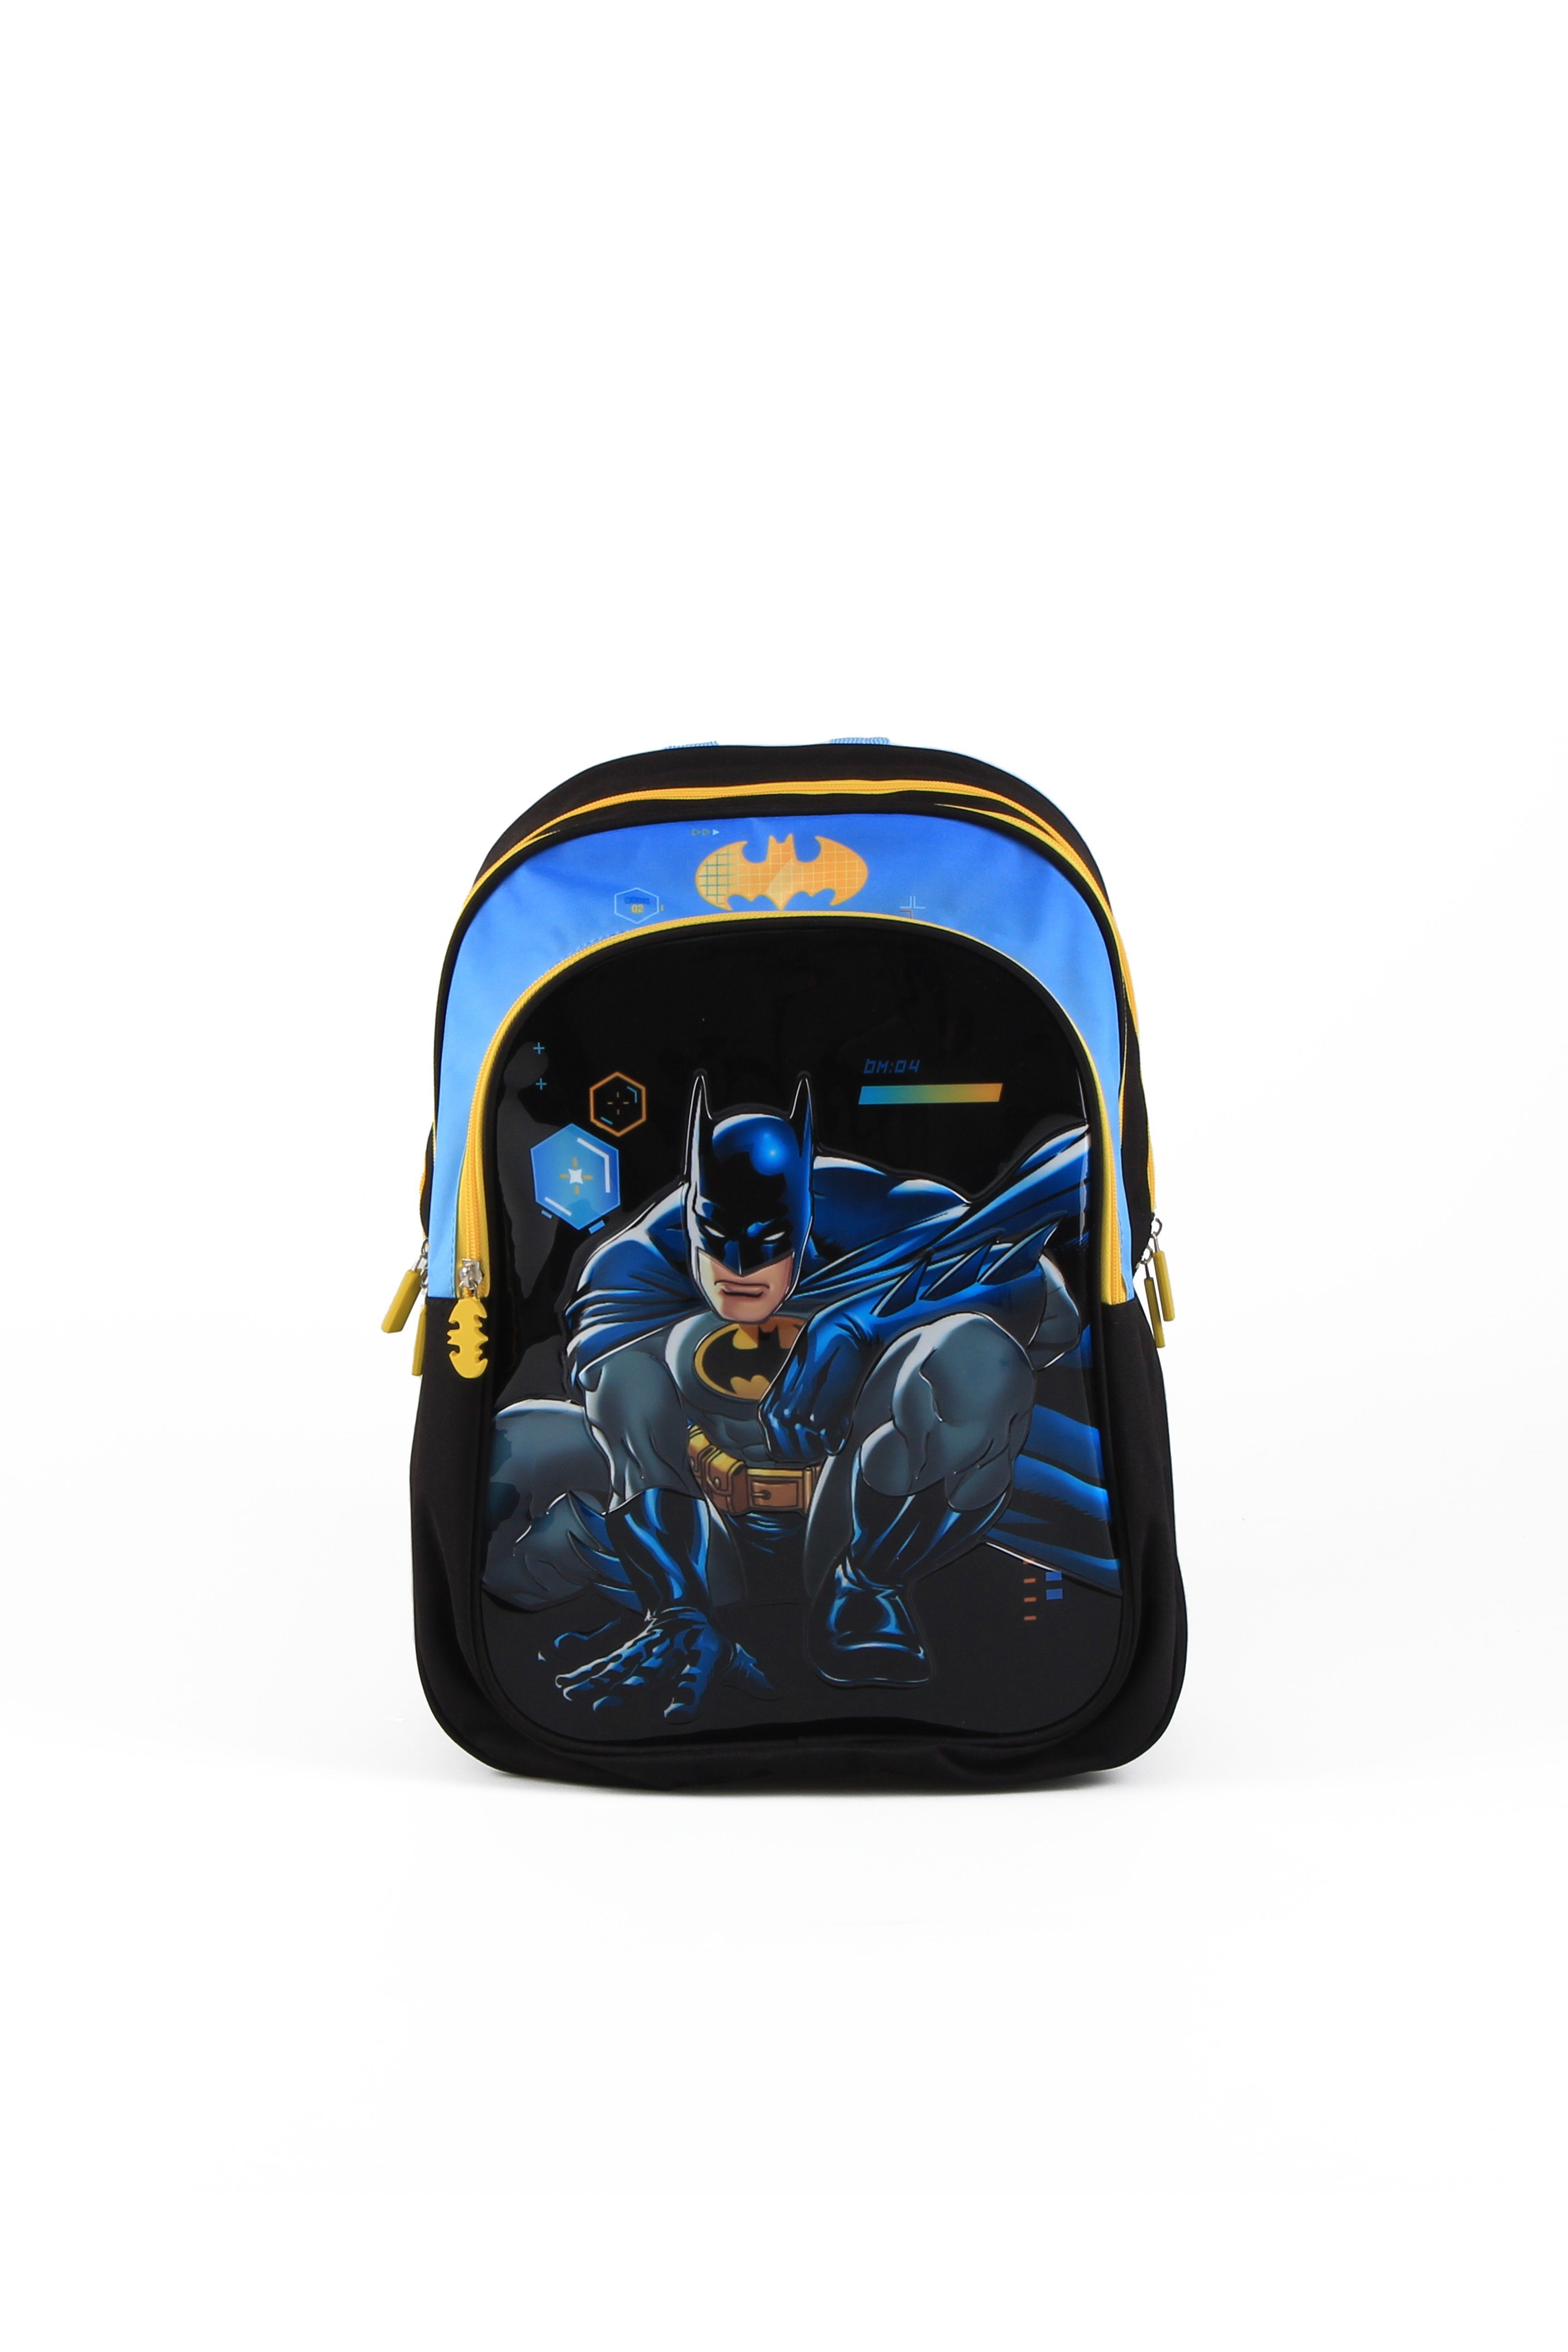 Batman Schulranzen Rucksack Schultasche 38cm 1 Reißverschlussfach + 1 Fronttasche